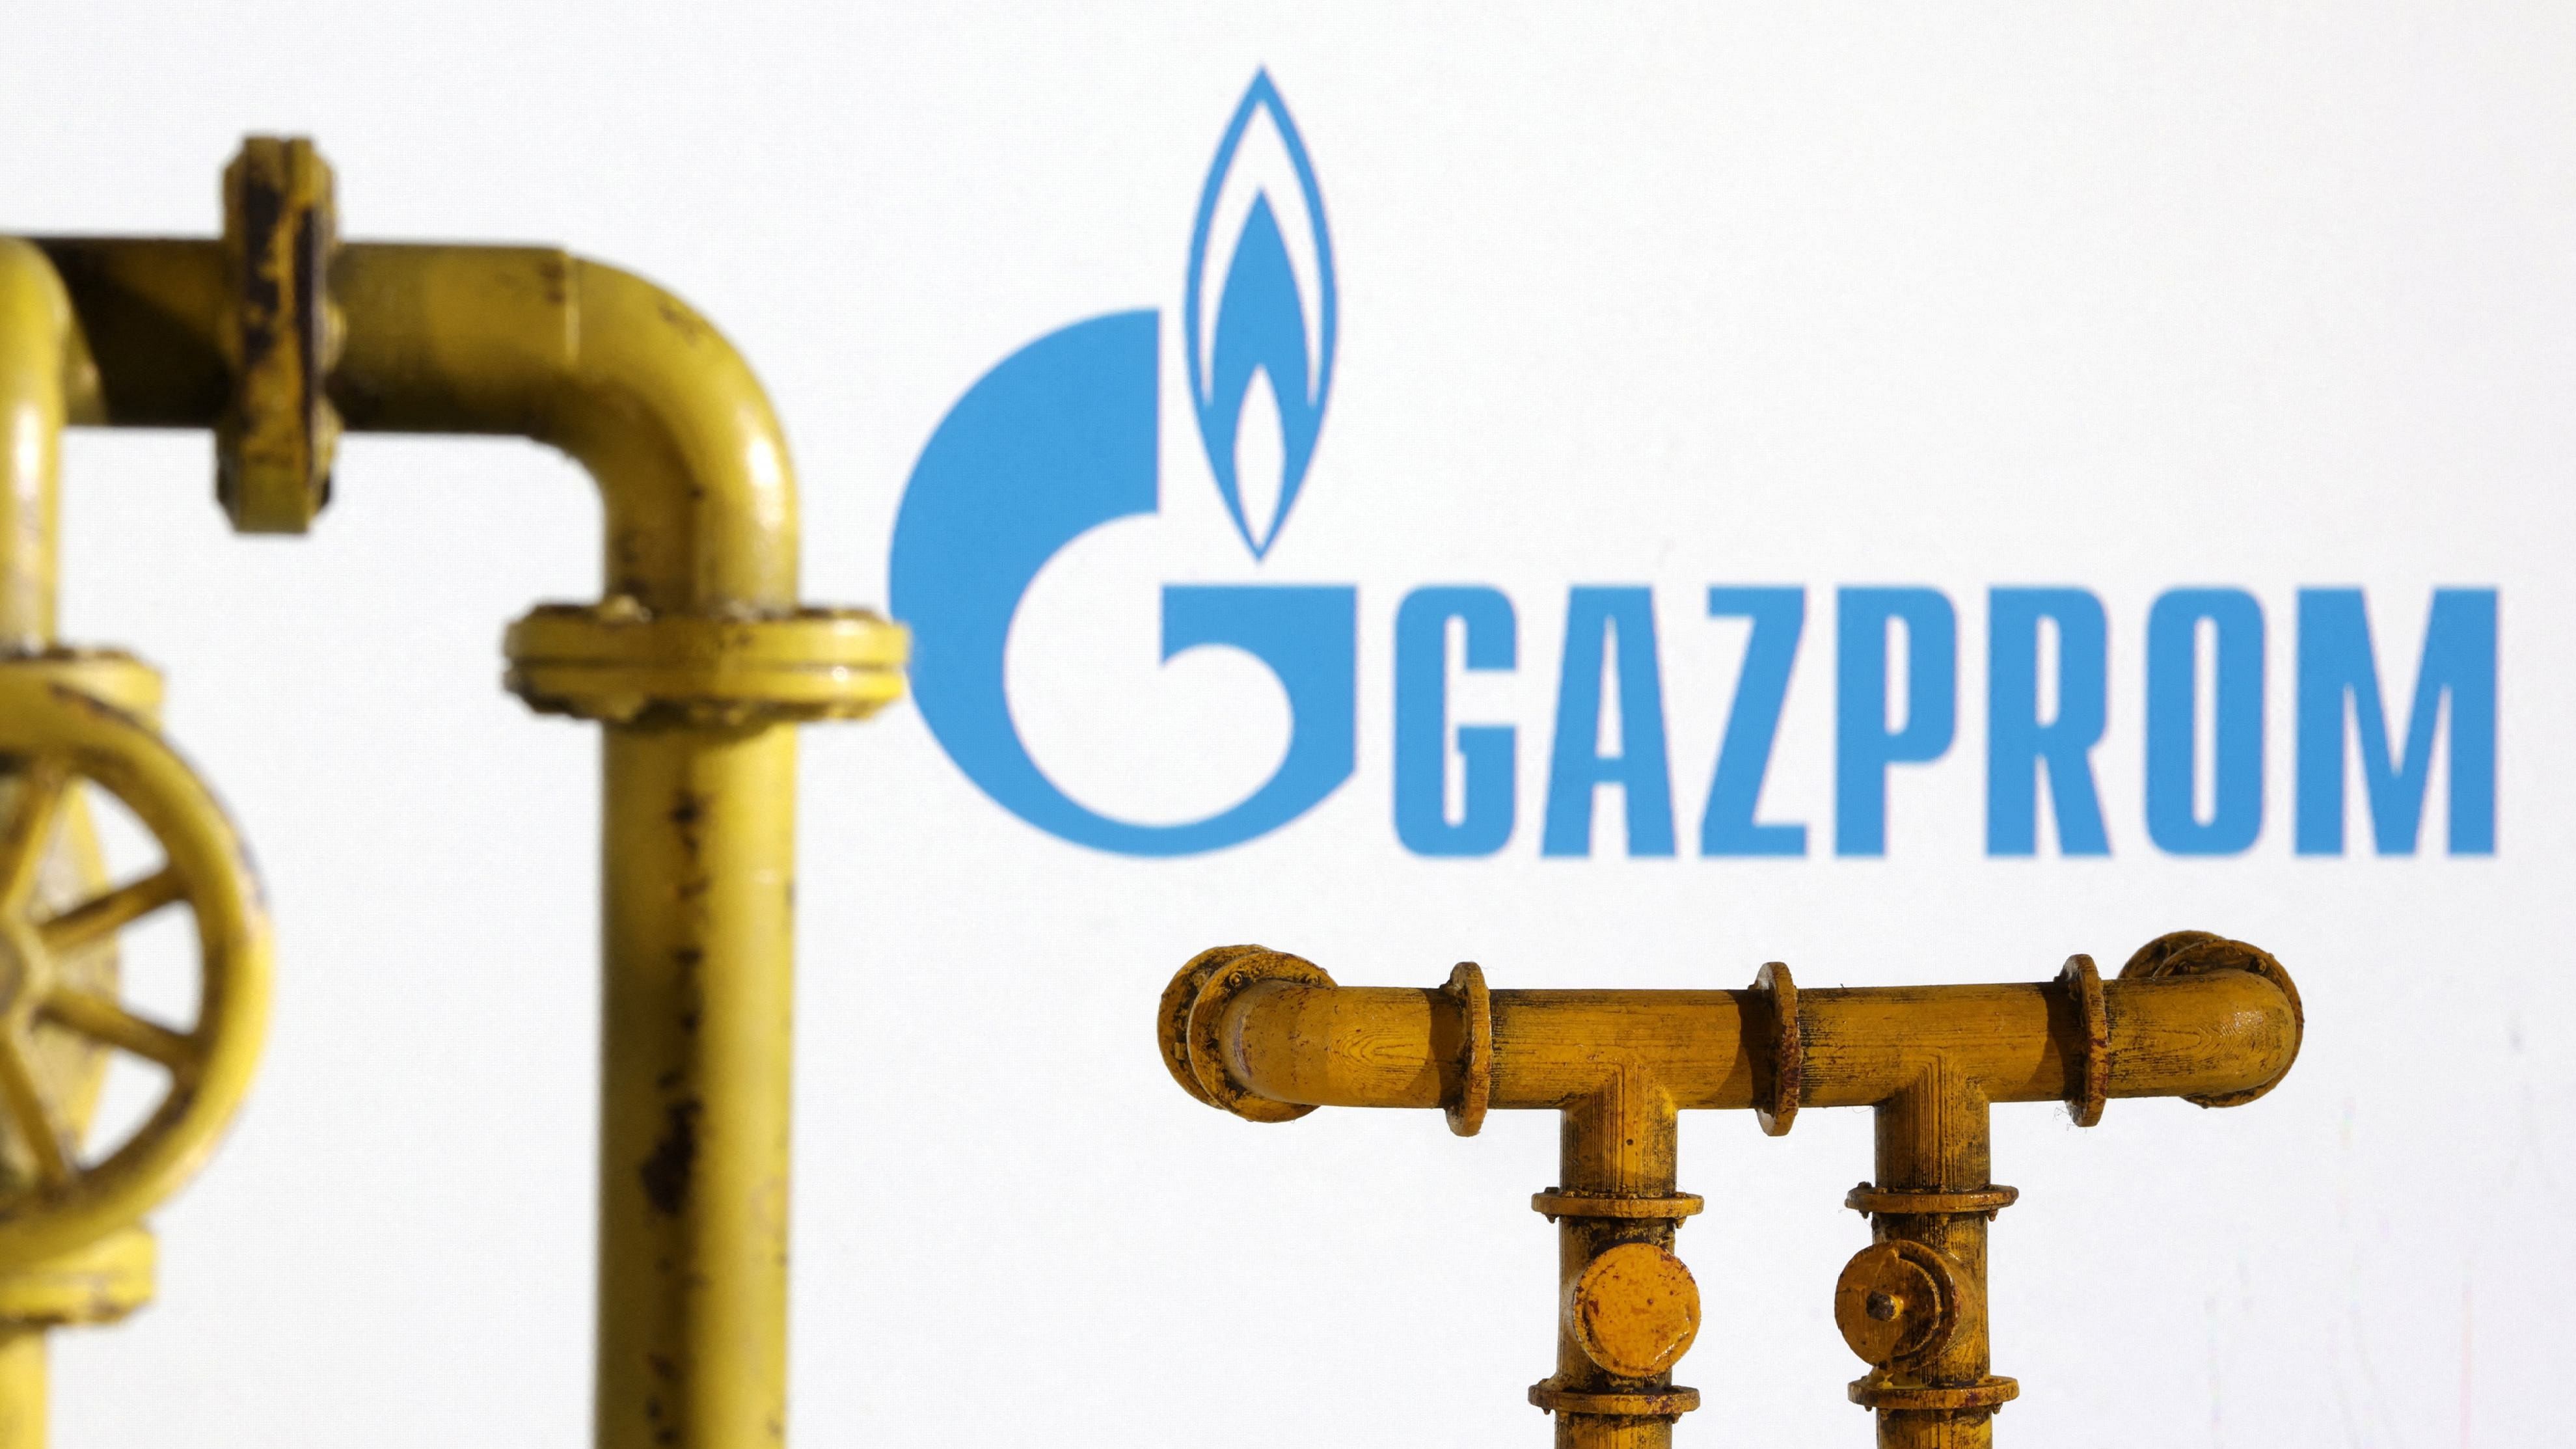 <div class="paragraphs"><p>Gazprom logo.</p></div>